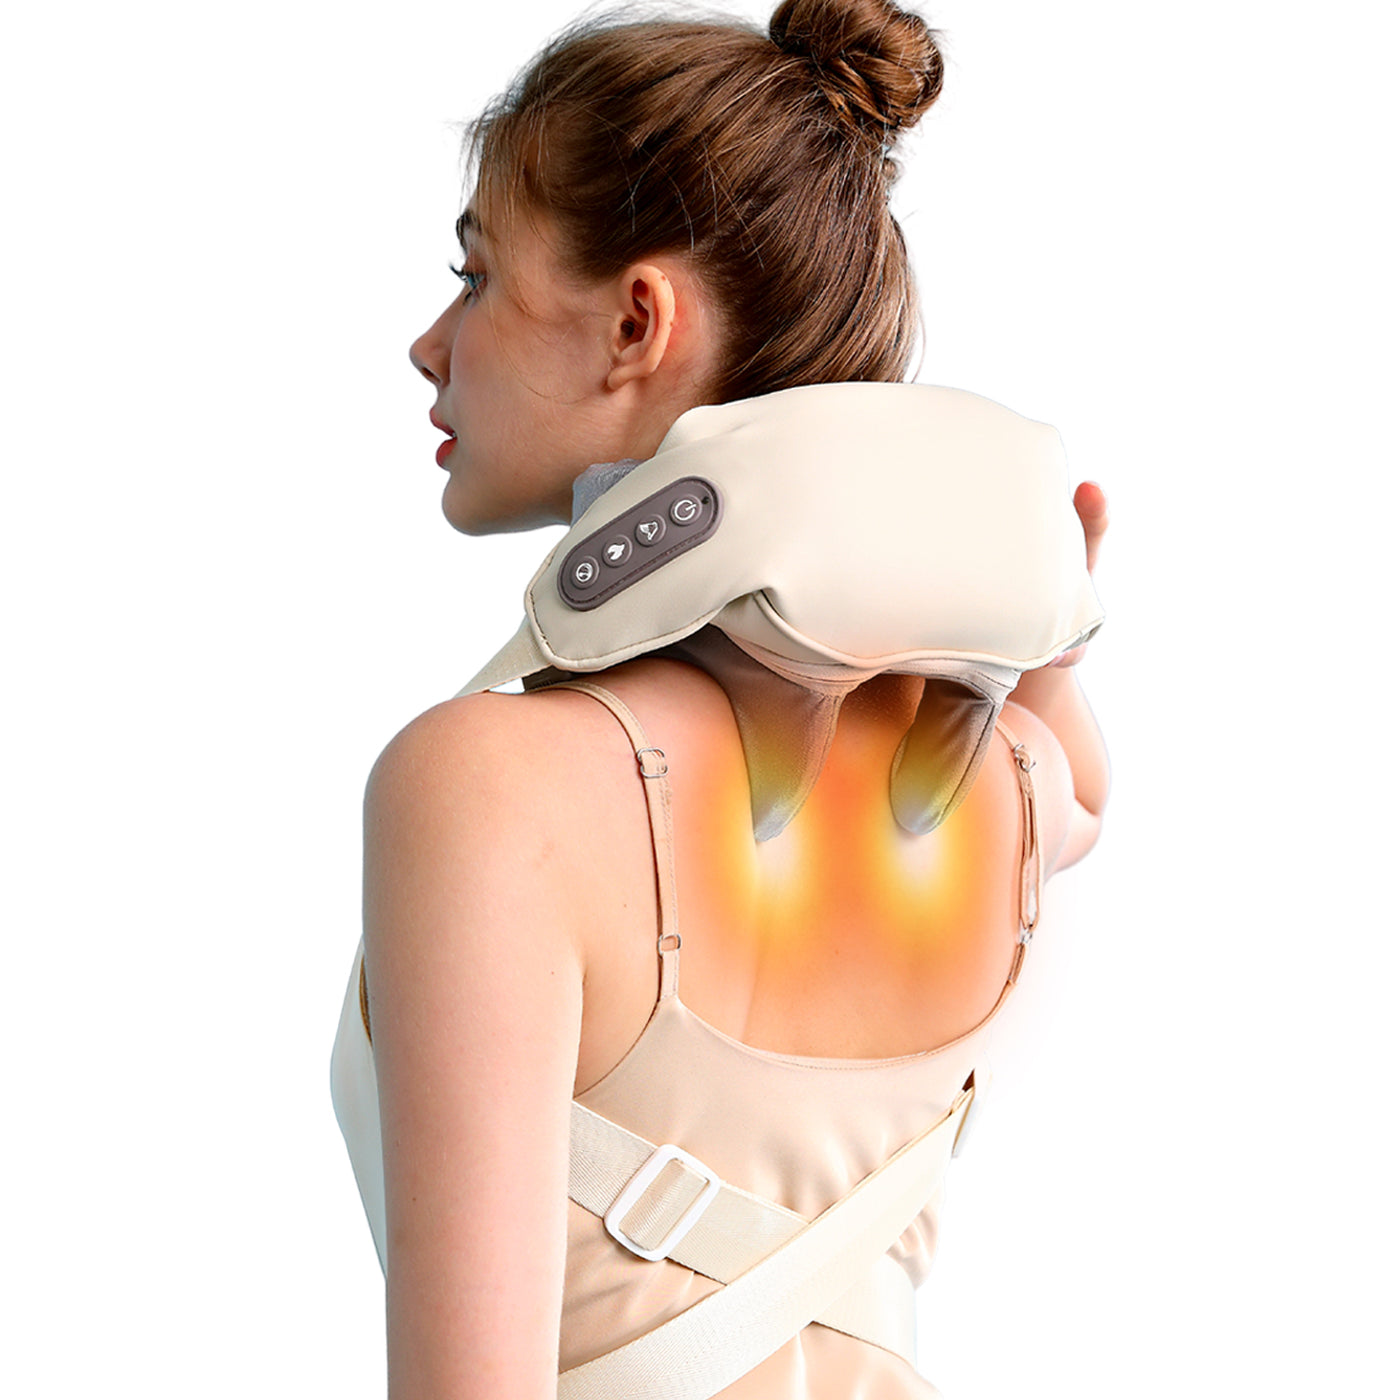 Tragbares Nacken-Schulter-Massagegerät von Asinhe, Tiefengewebe-Shiatsu-Rückenmassagegerät mit Wärme zur Schmerzlinderung, elektrisches Massagekissen zum Kneten von Muskeln mit menschlicher Hand, Geschenke für Frauen und Männer, Ganzkörperanwendung 